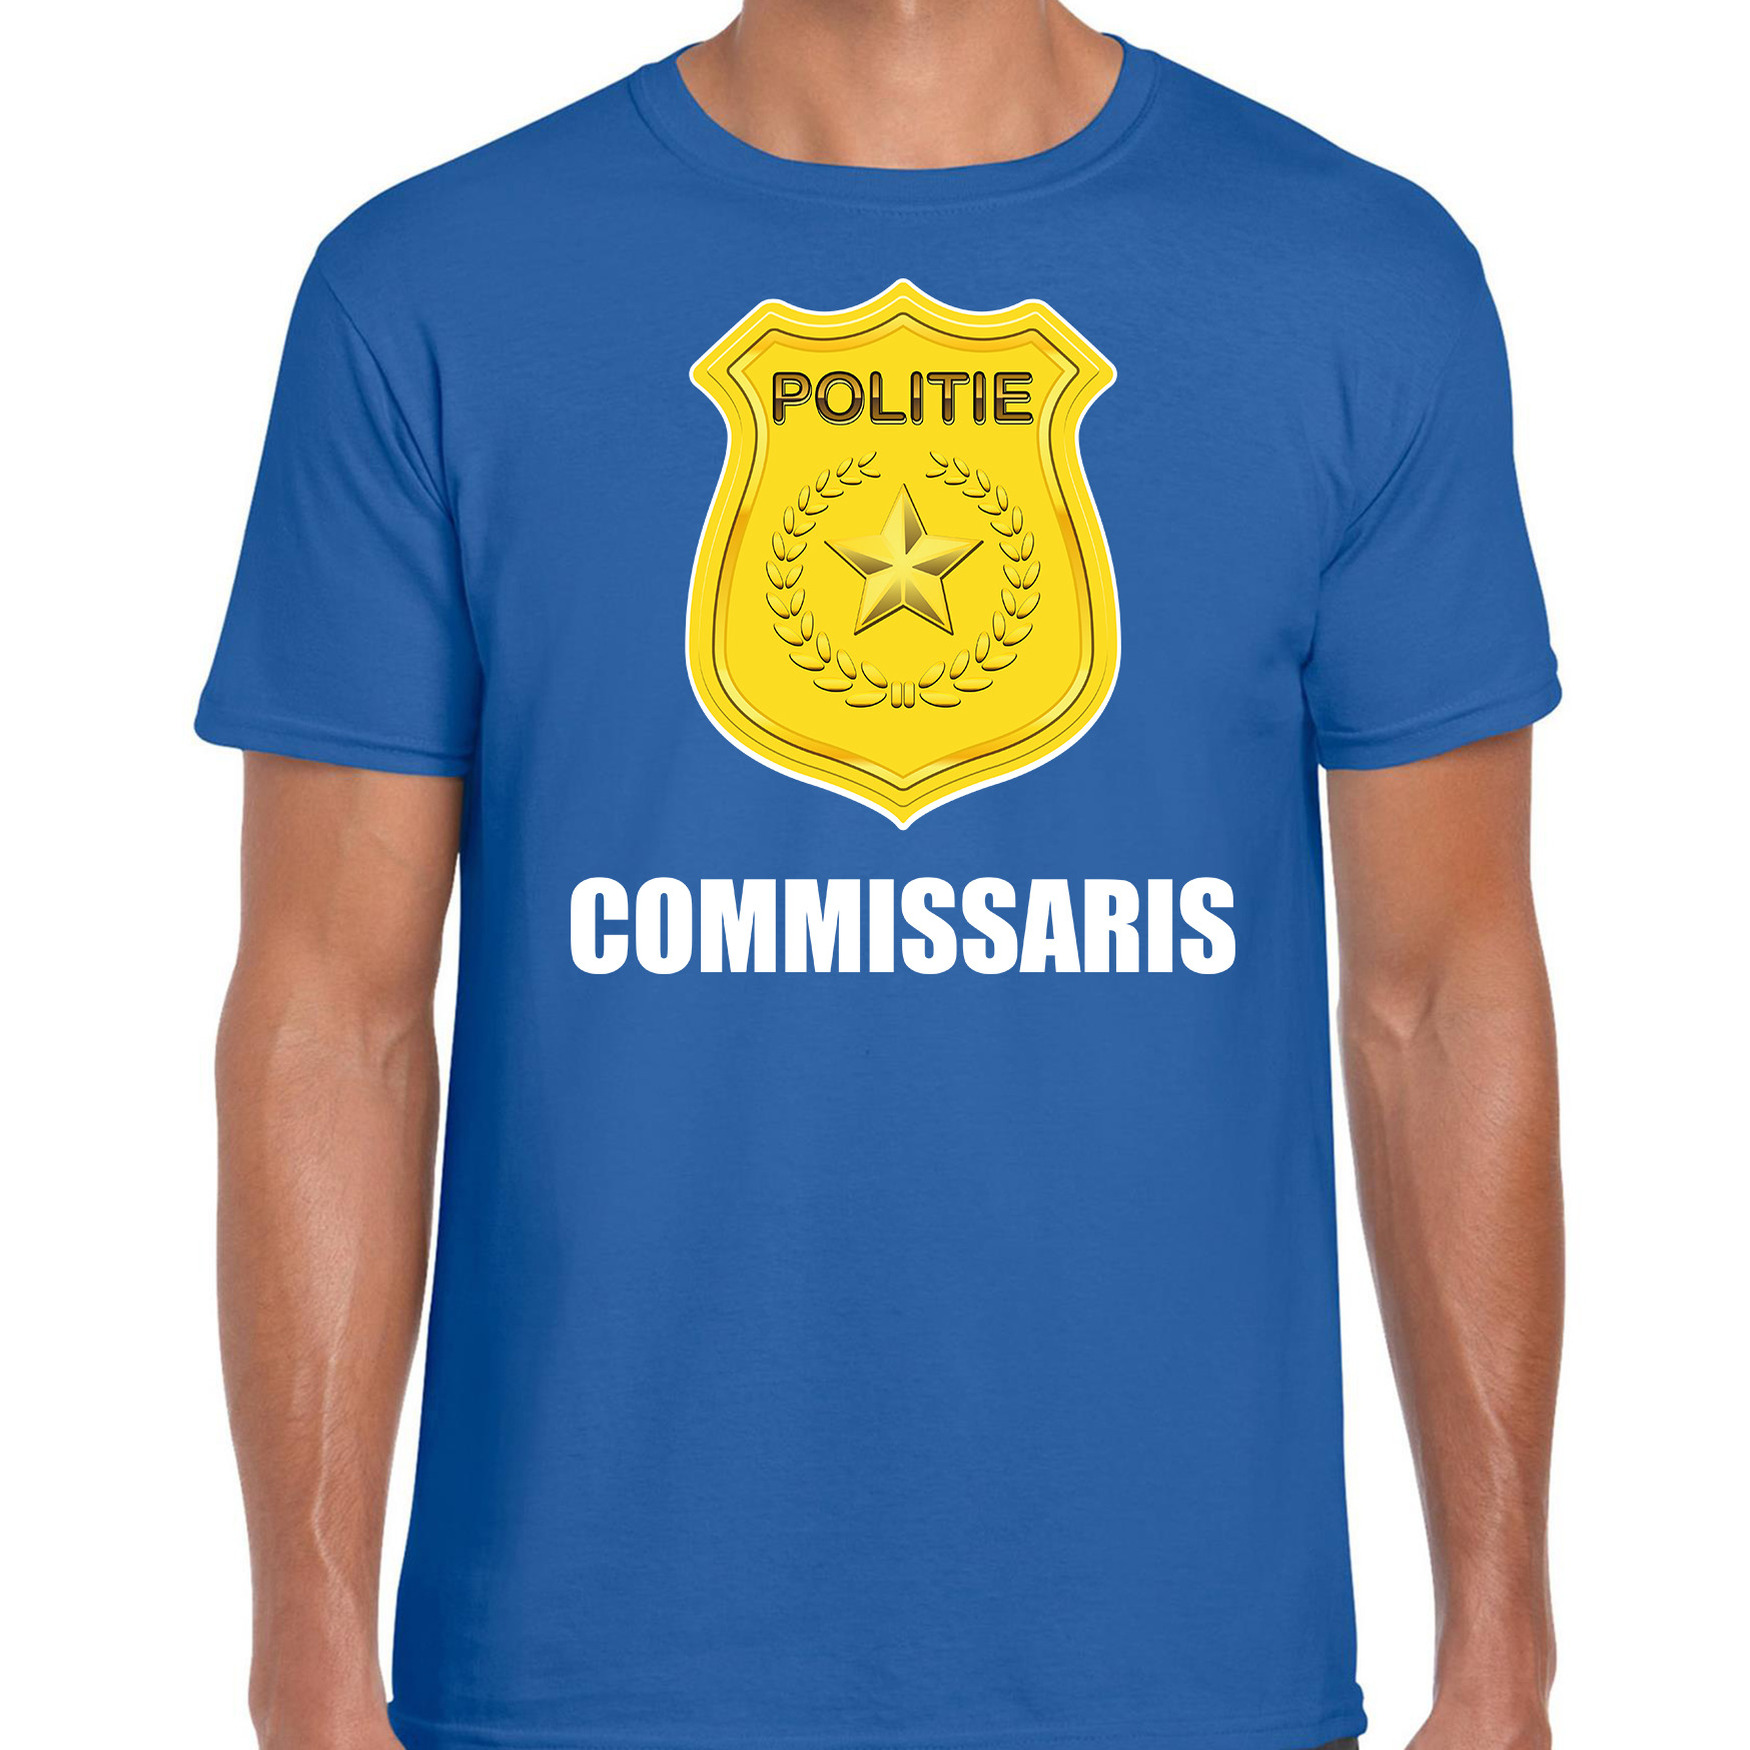 Carnaval shirt-outfit politie embleem commissaris blauw voor heren